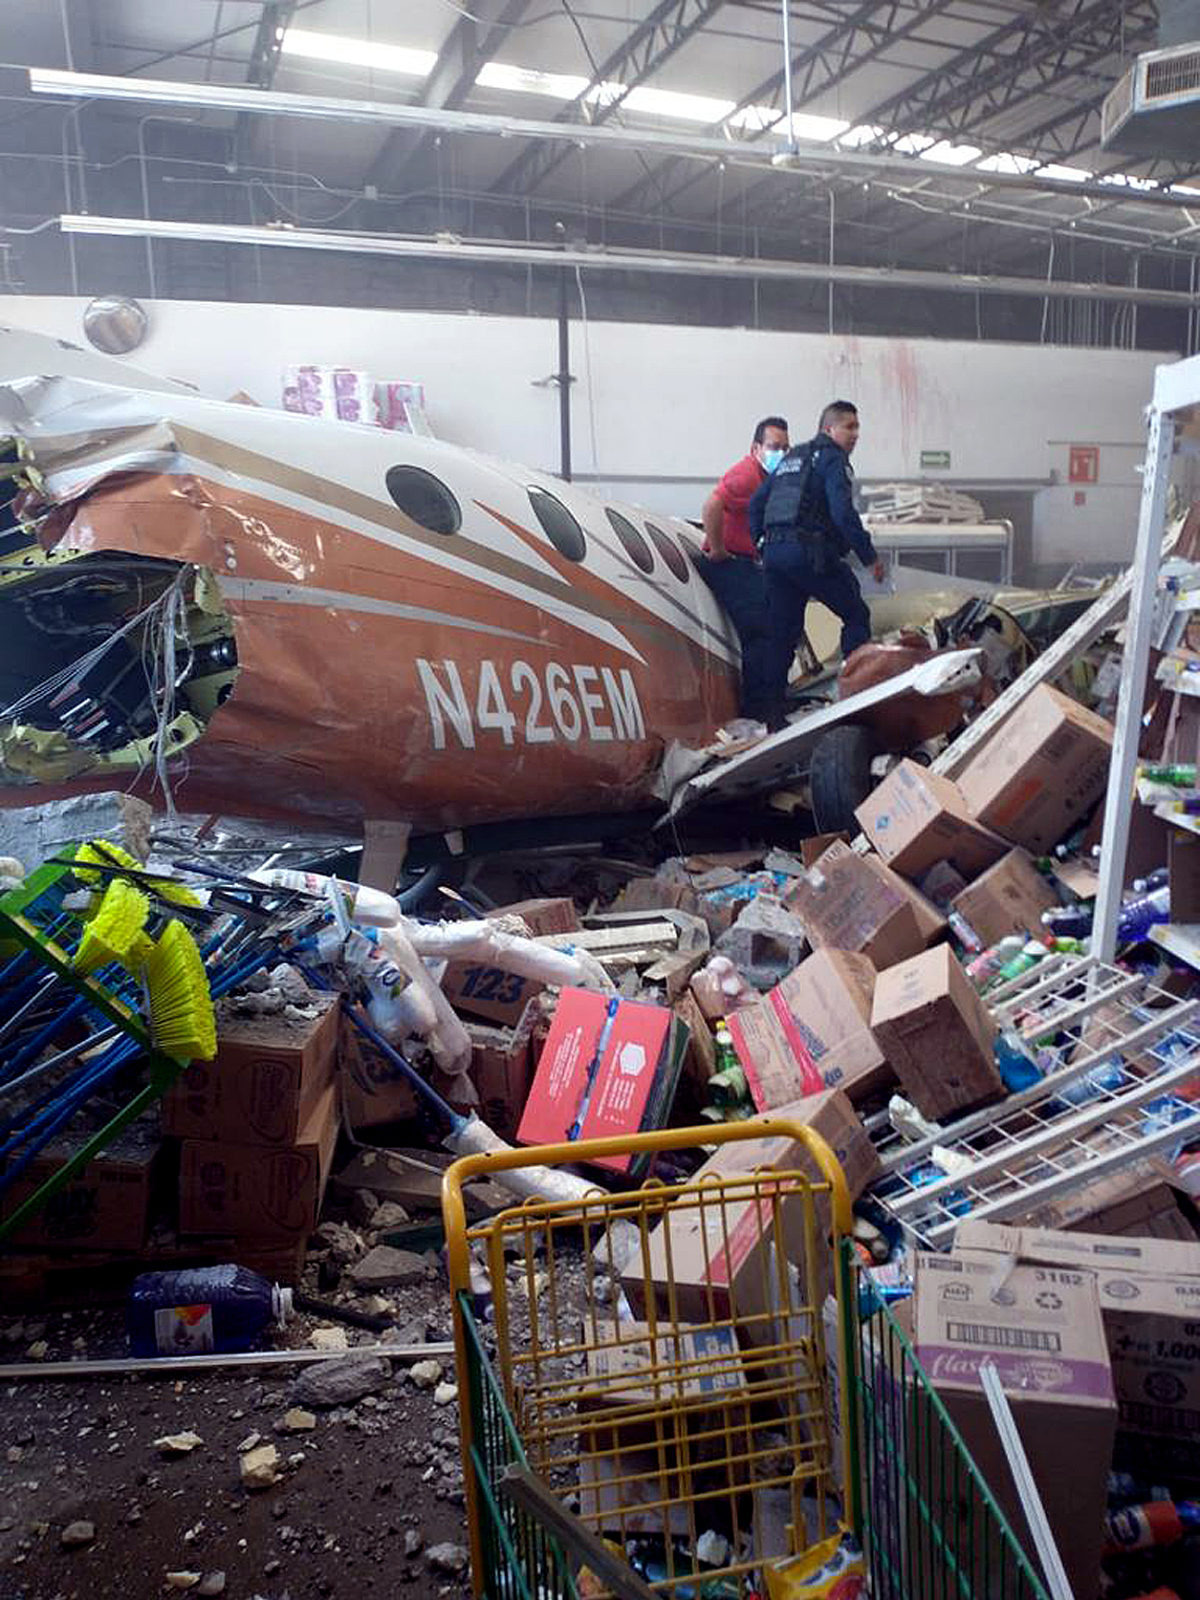 Una avioneta se estrella contra supermercado en México y causa varios heridos